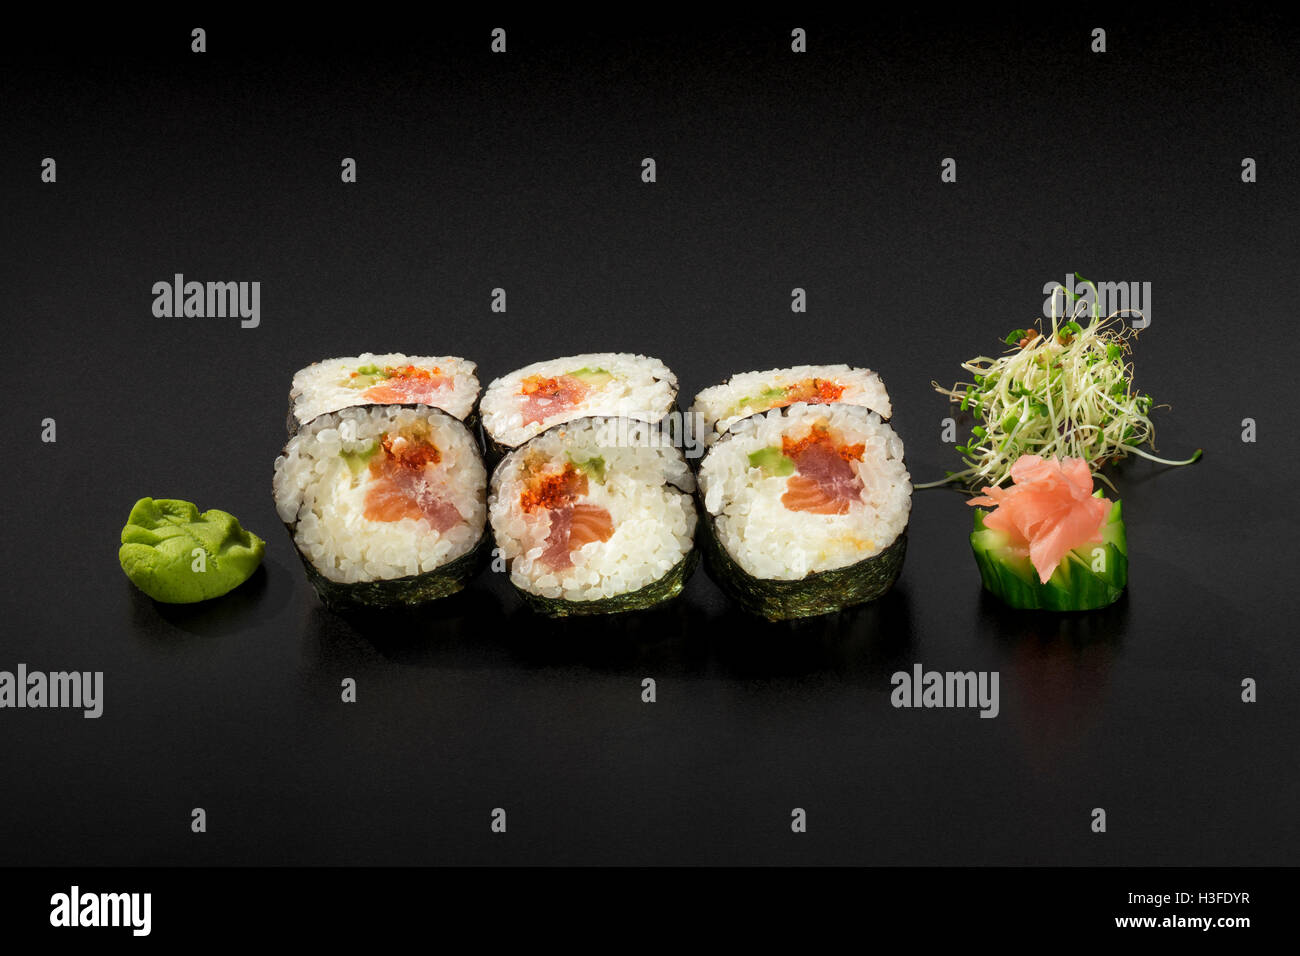 Rouleaux de sushi hosomaki décoré de salade d'algues et wasabi Banque D'Images